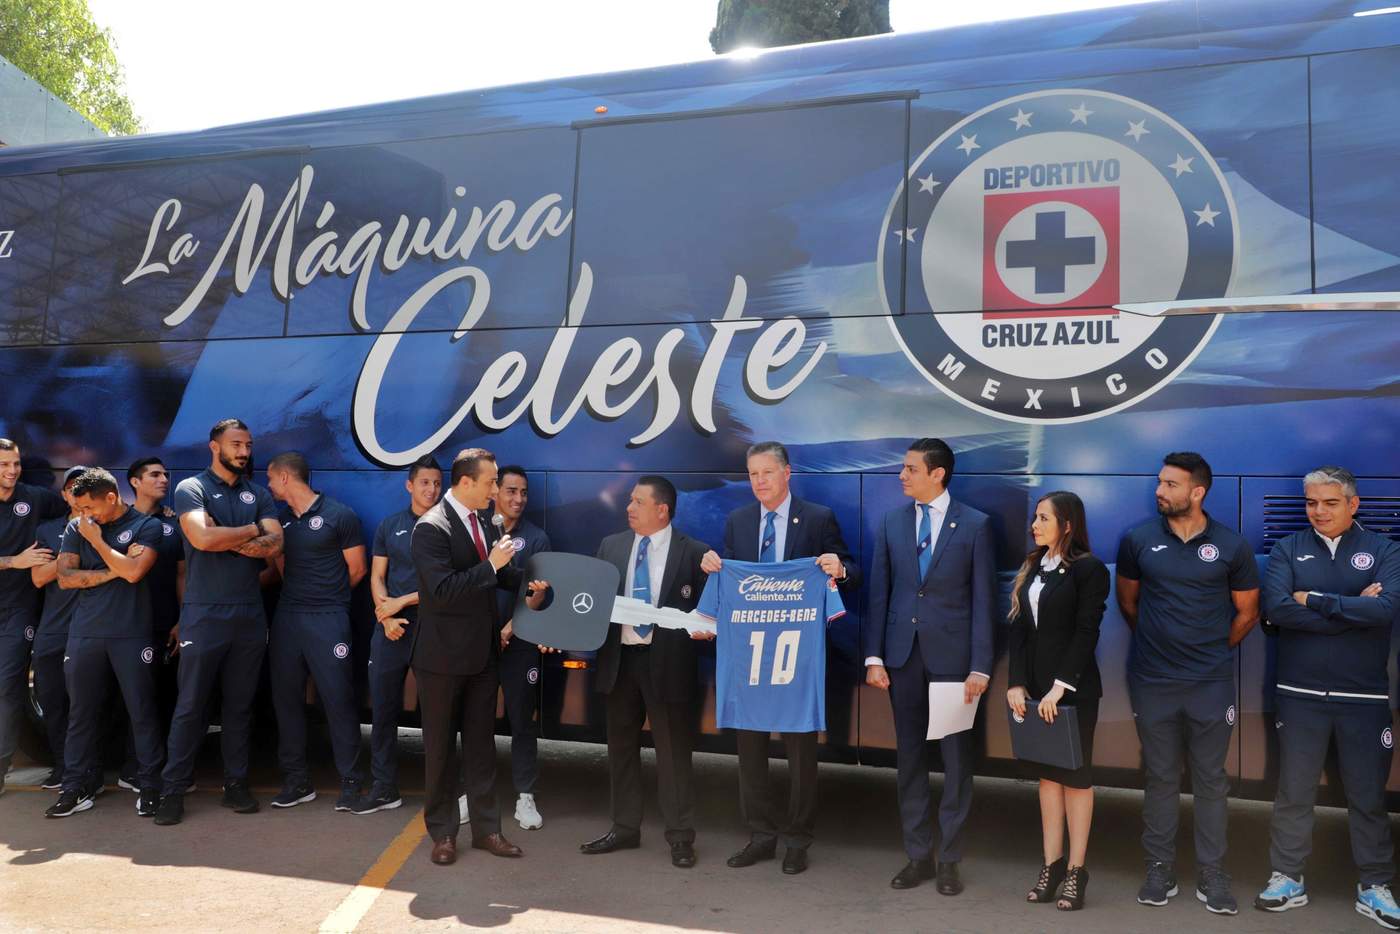 El evento donde el Cruz Azul presentó el nuevo autobús que los transportará, se realizó con la presencia de todo el plantel, incluyendo el presidente deportivo, Ricardo Peláez.